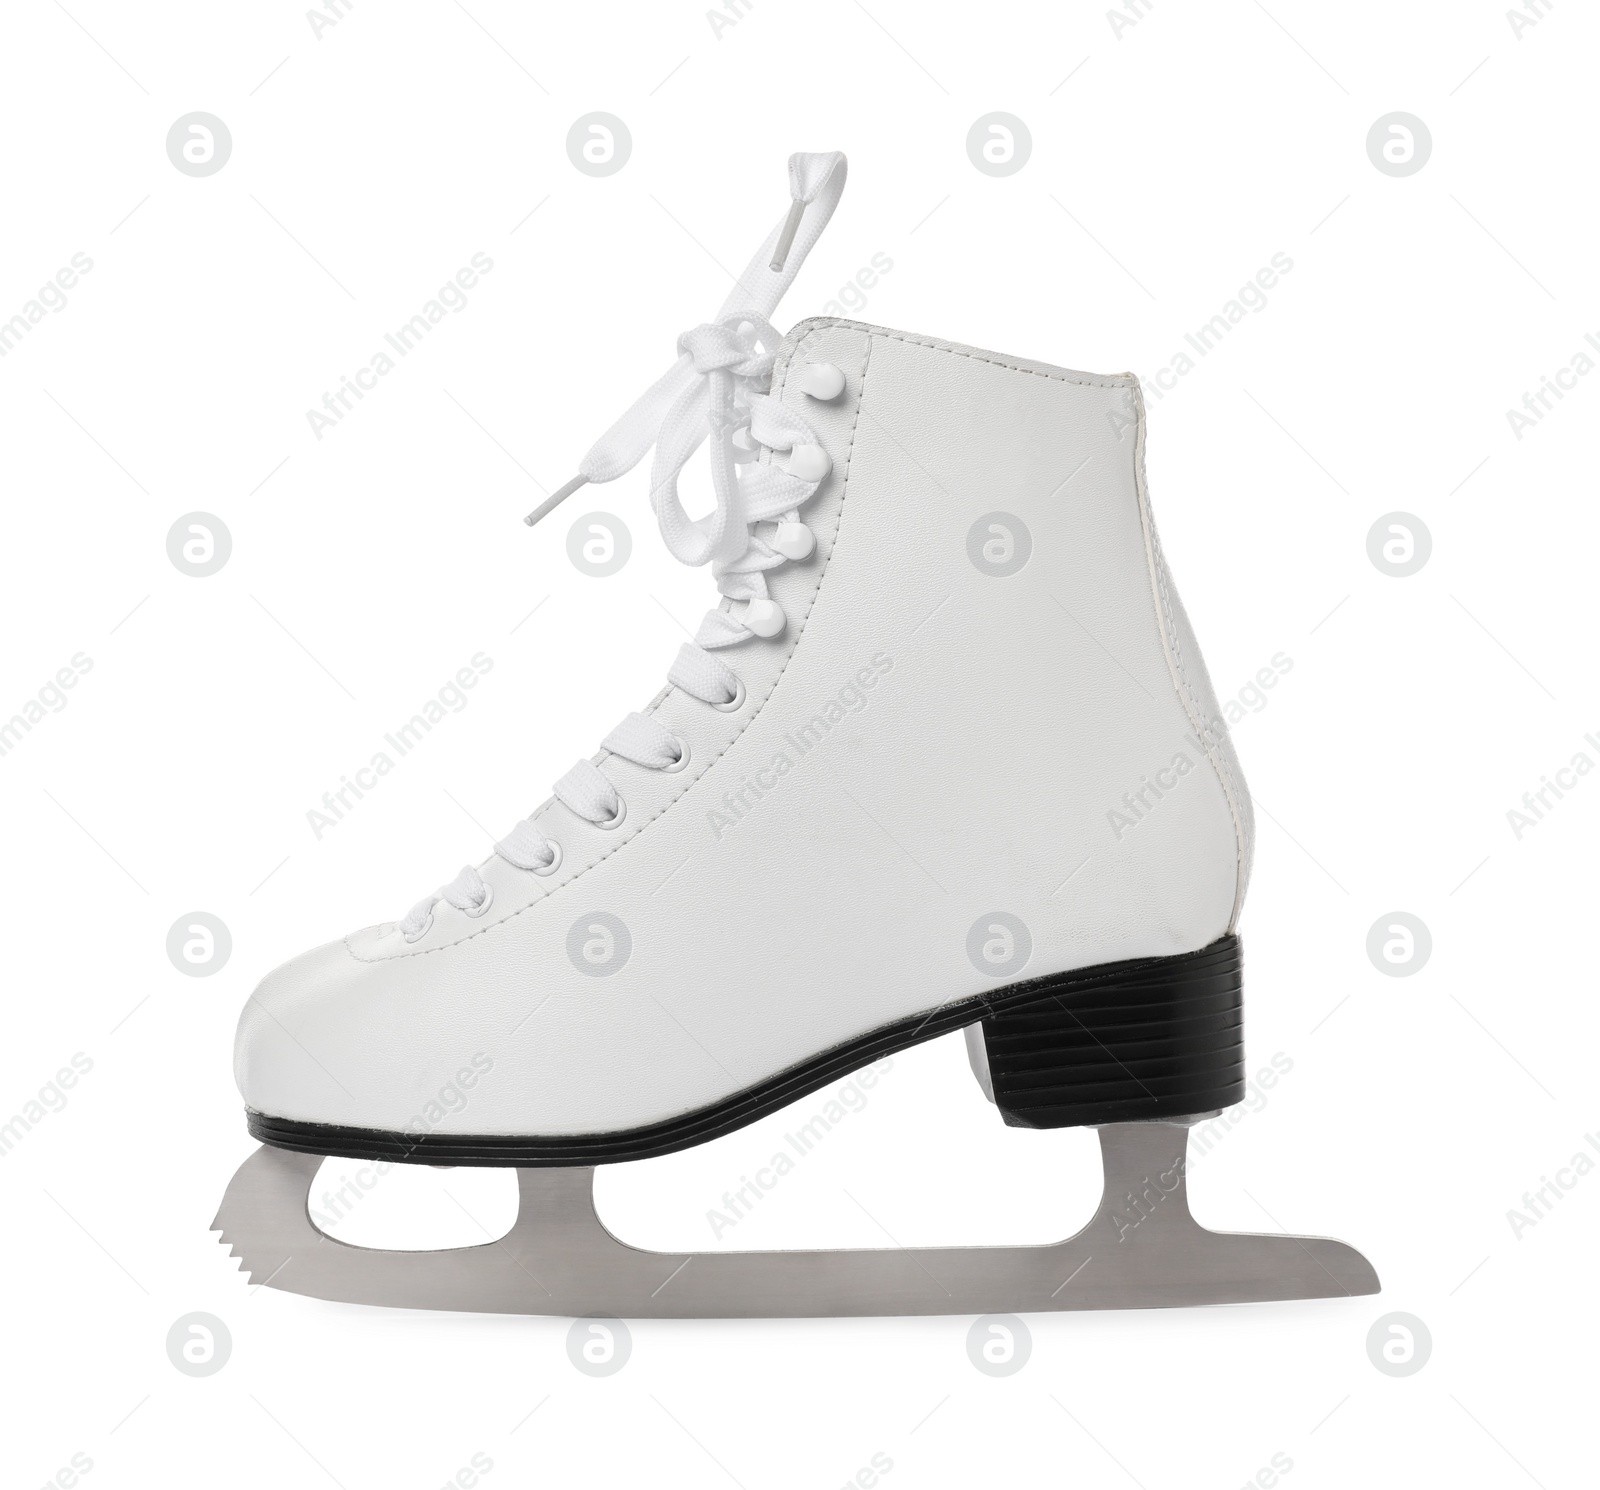 Photo of Stylish figure ice skate isolated on white